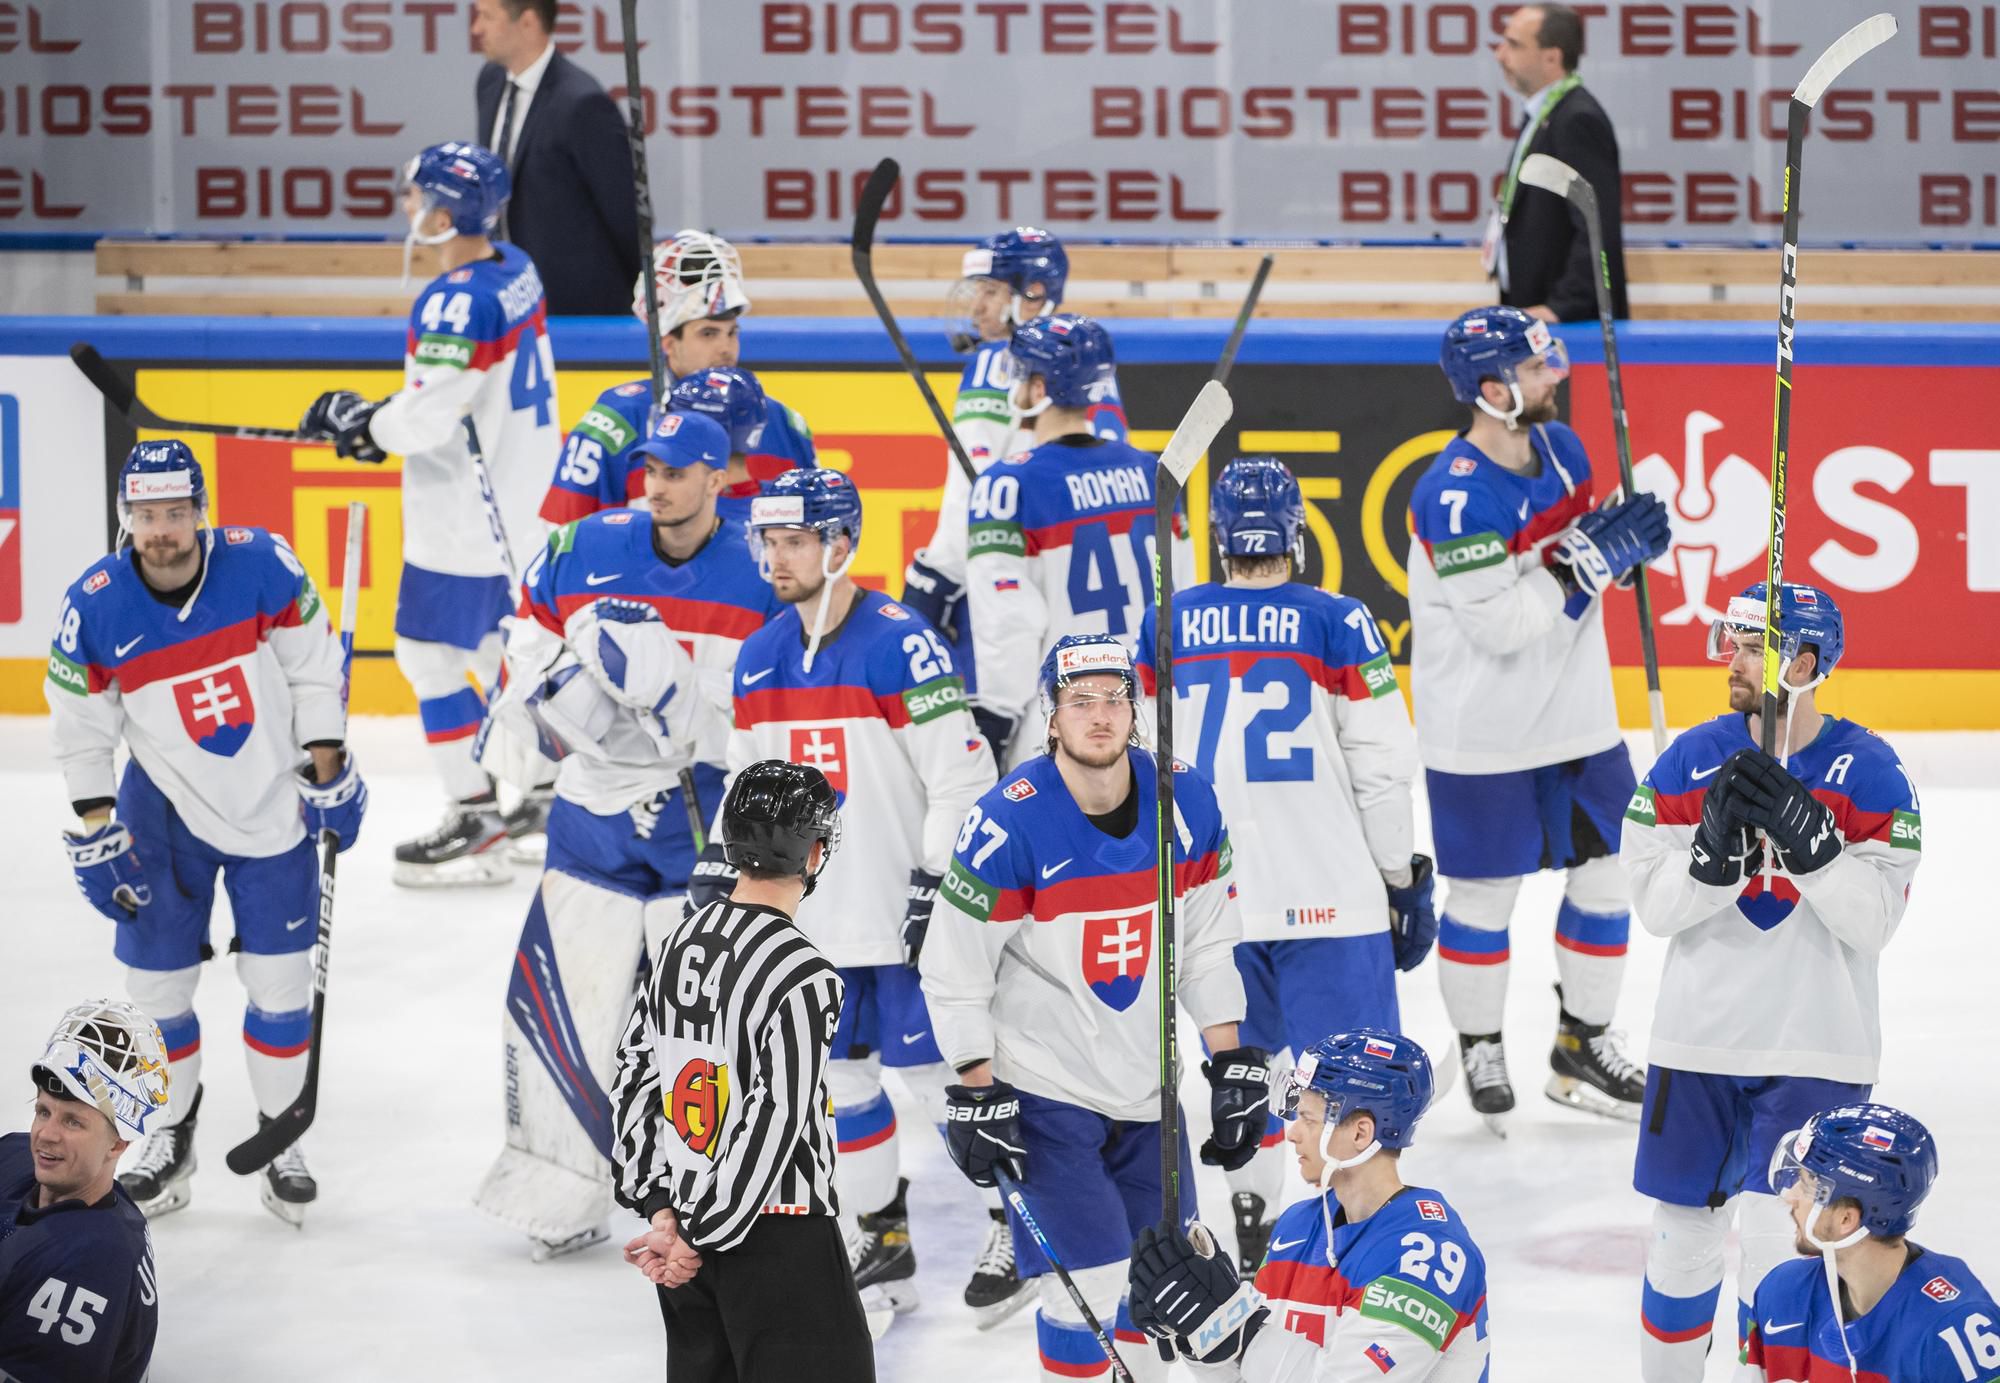 MS v hokeji 2022: Slovensko - Fínsko (Slovenskí hokejisti sa lúčia s divákmi)